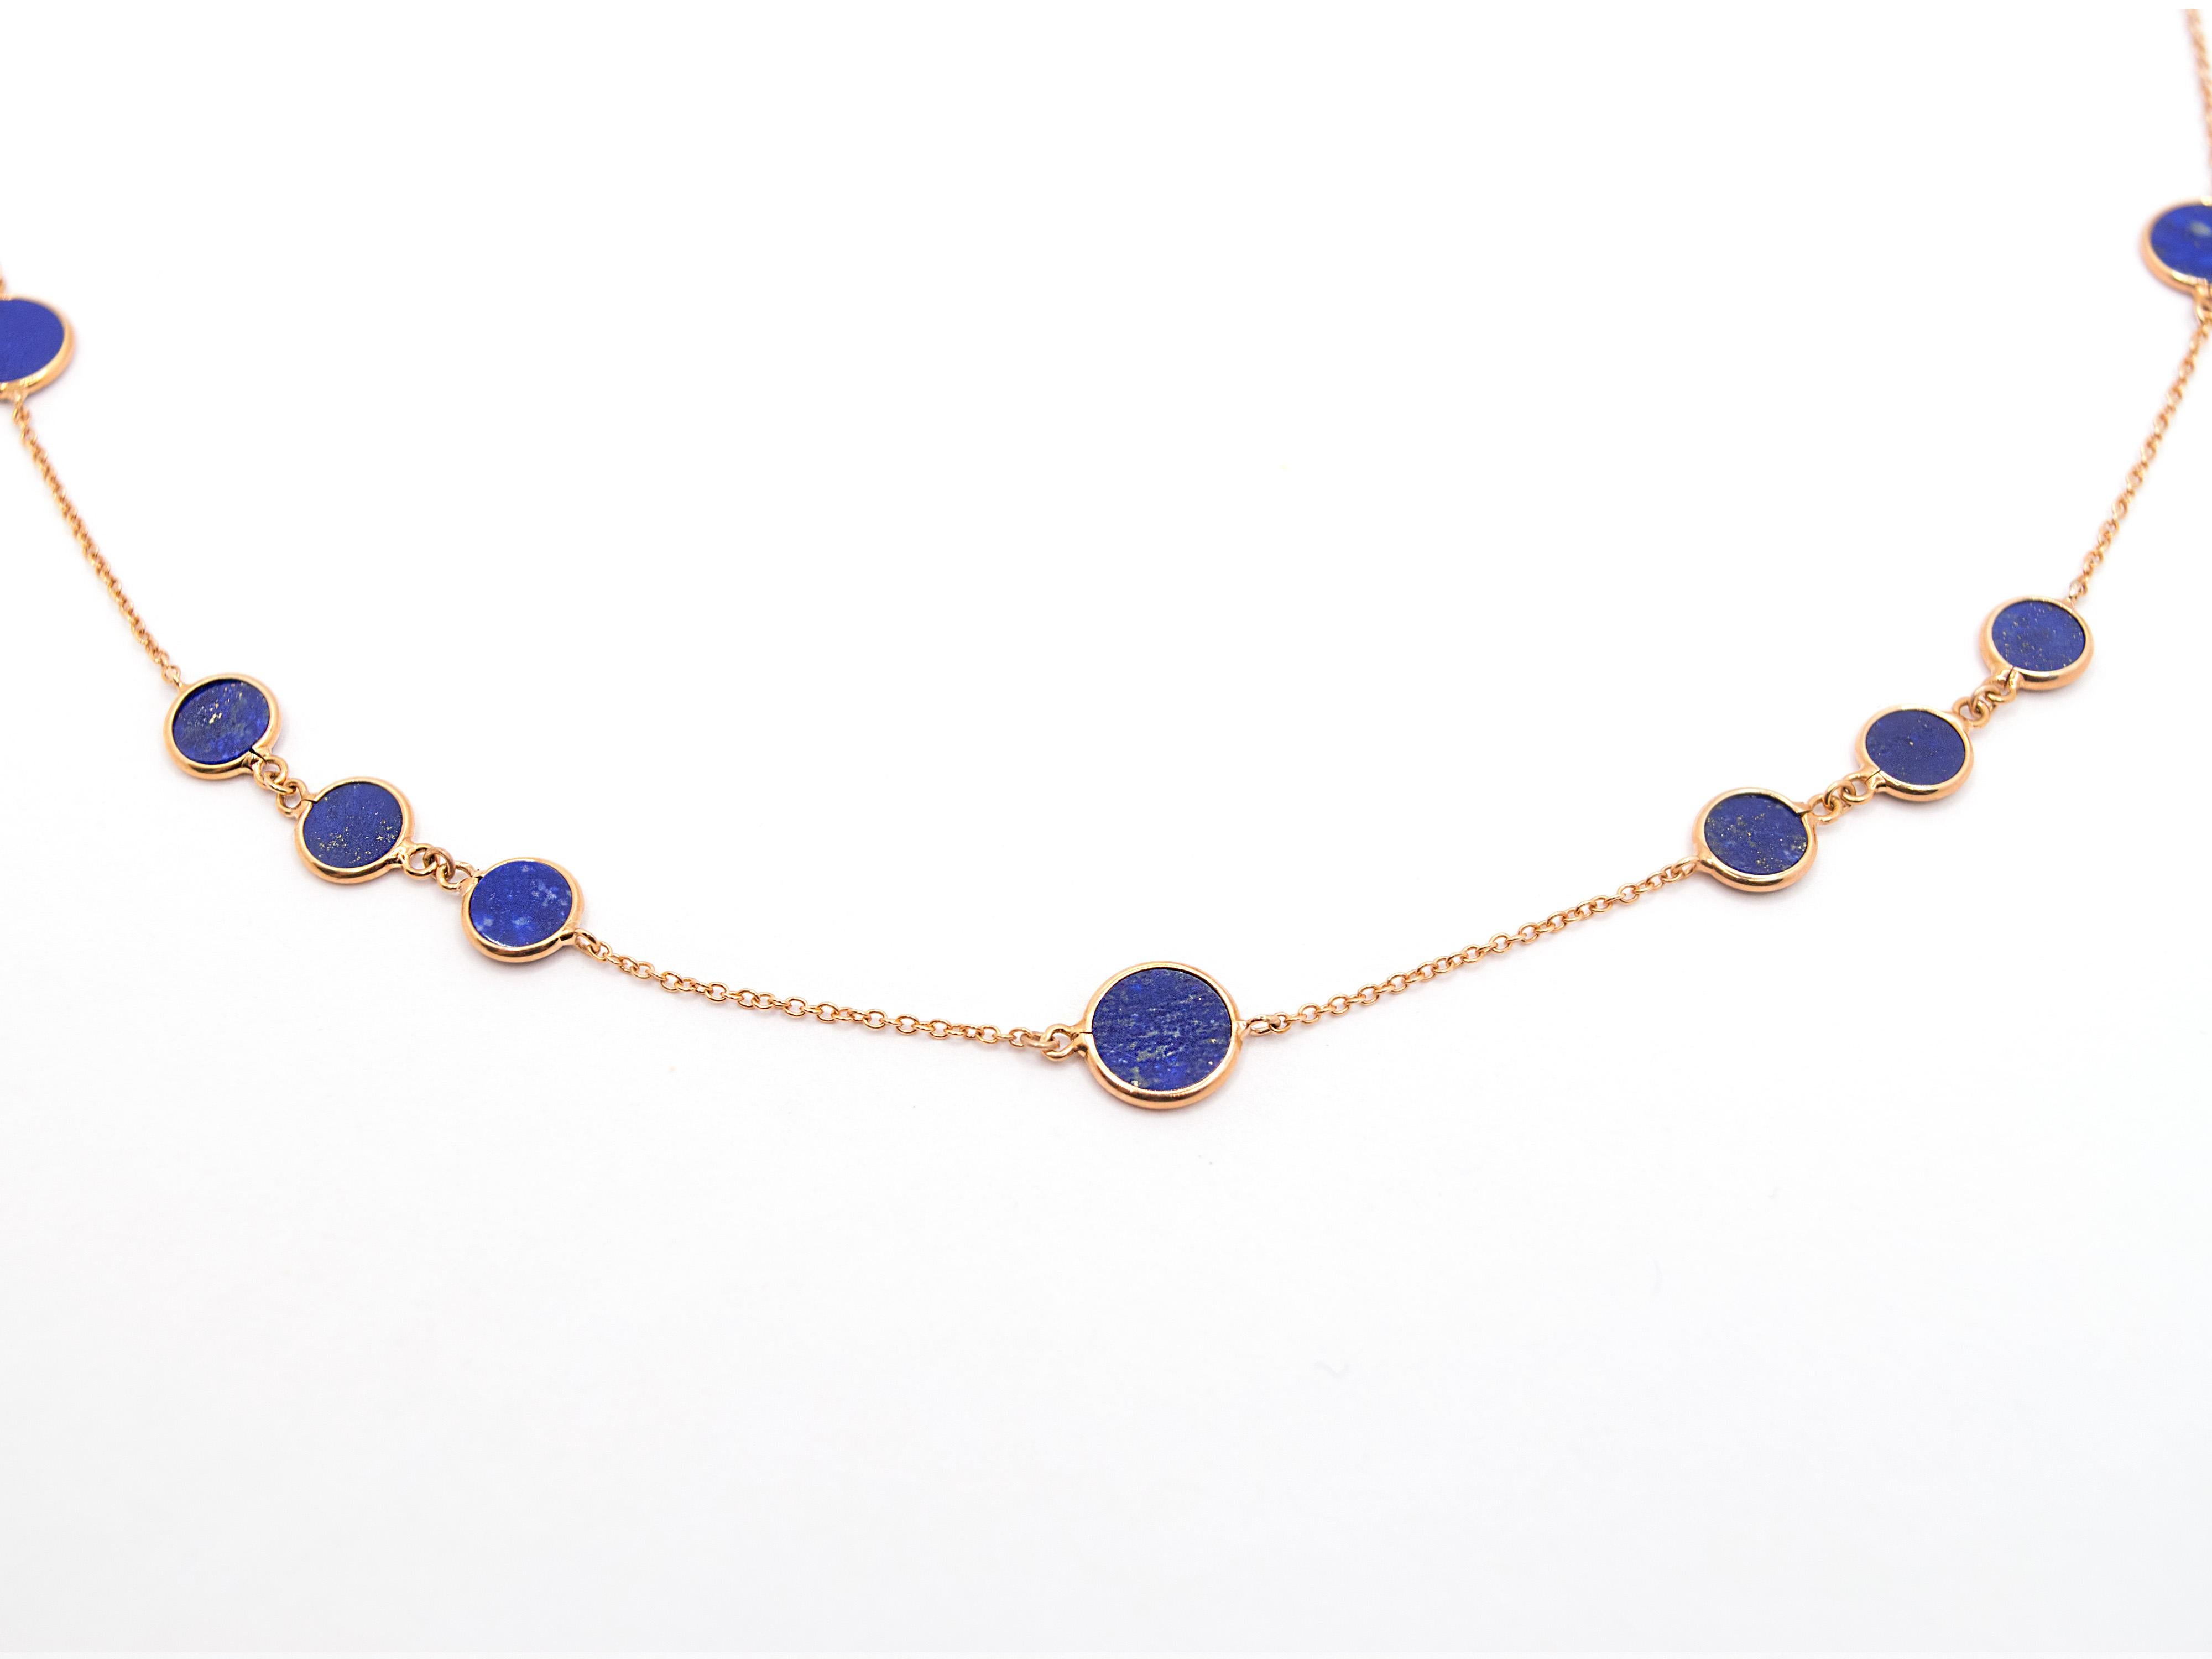 Un magnifique collier en or rose 18 Kt et Lapis-lazuli.
Ce collier se compose d'une chaîne ronde entrecoupée d'éléments ronds en Lapis-lazuli taillés dans la masse, d'un beau bleu profond veiné de stries dorées typiques de cette pierre.
Les disques